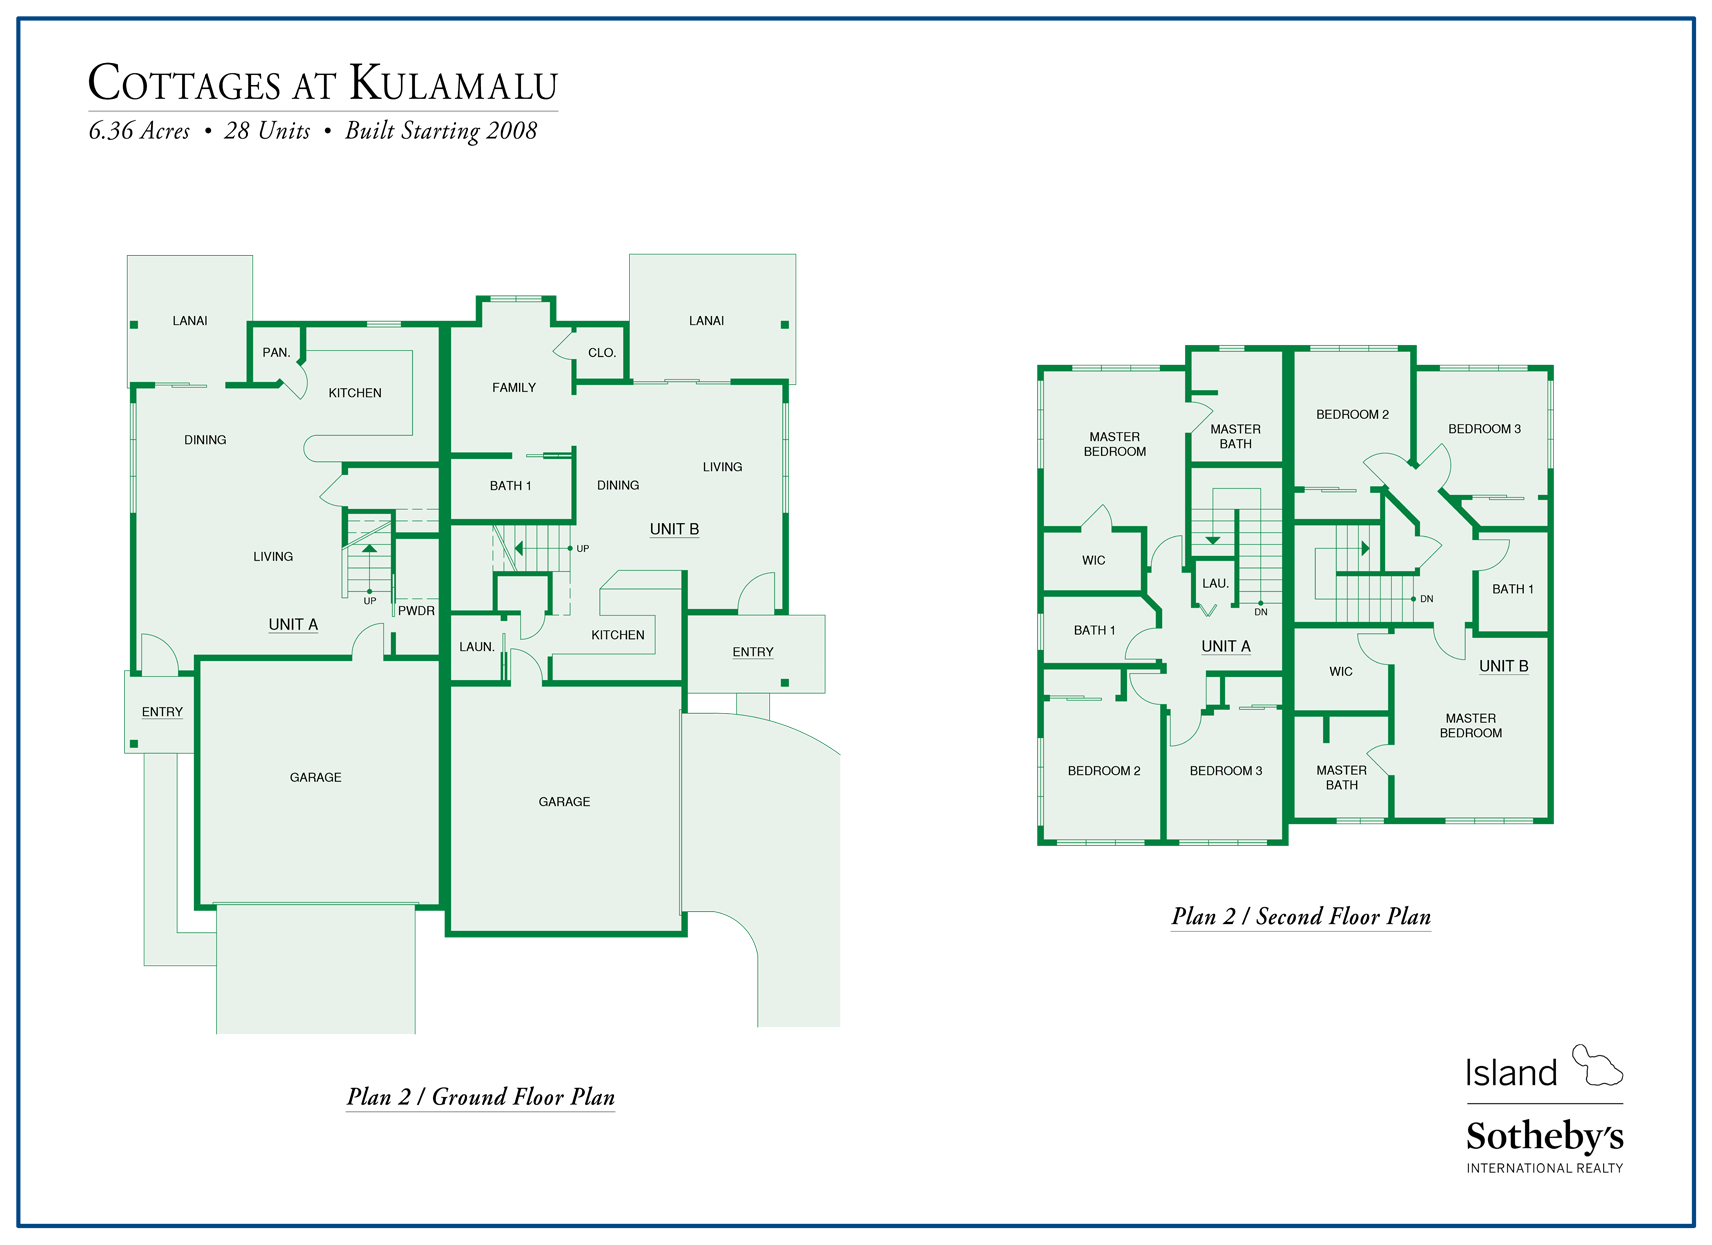 cottages at kulamalu floor plan 2